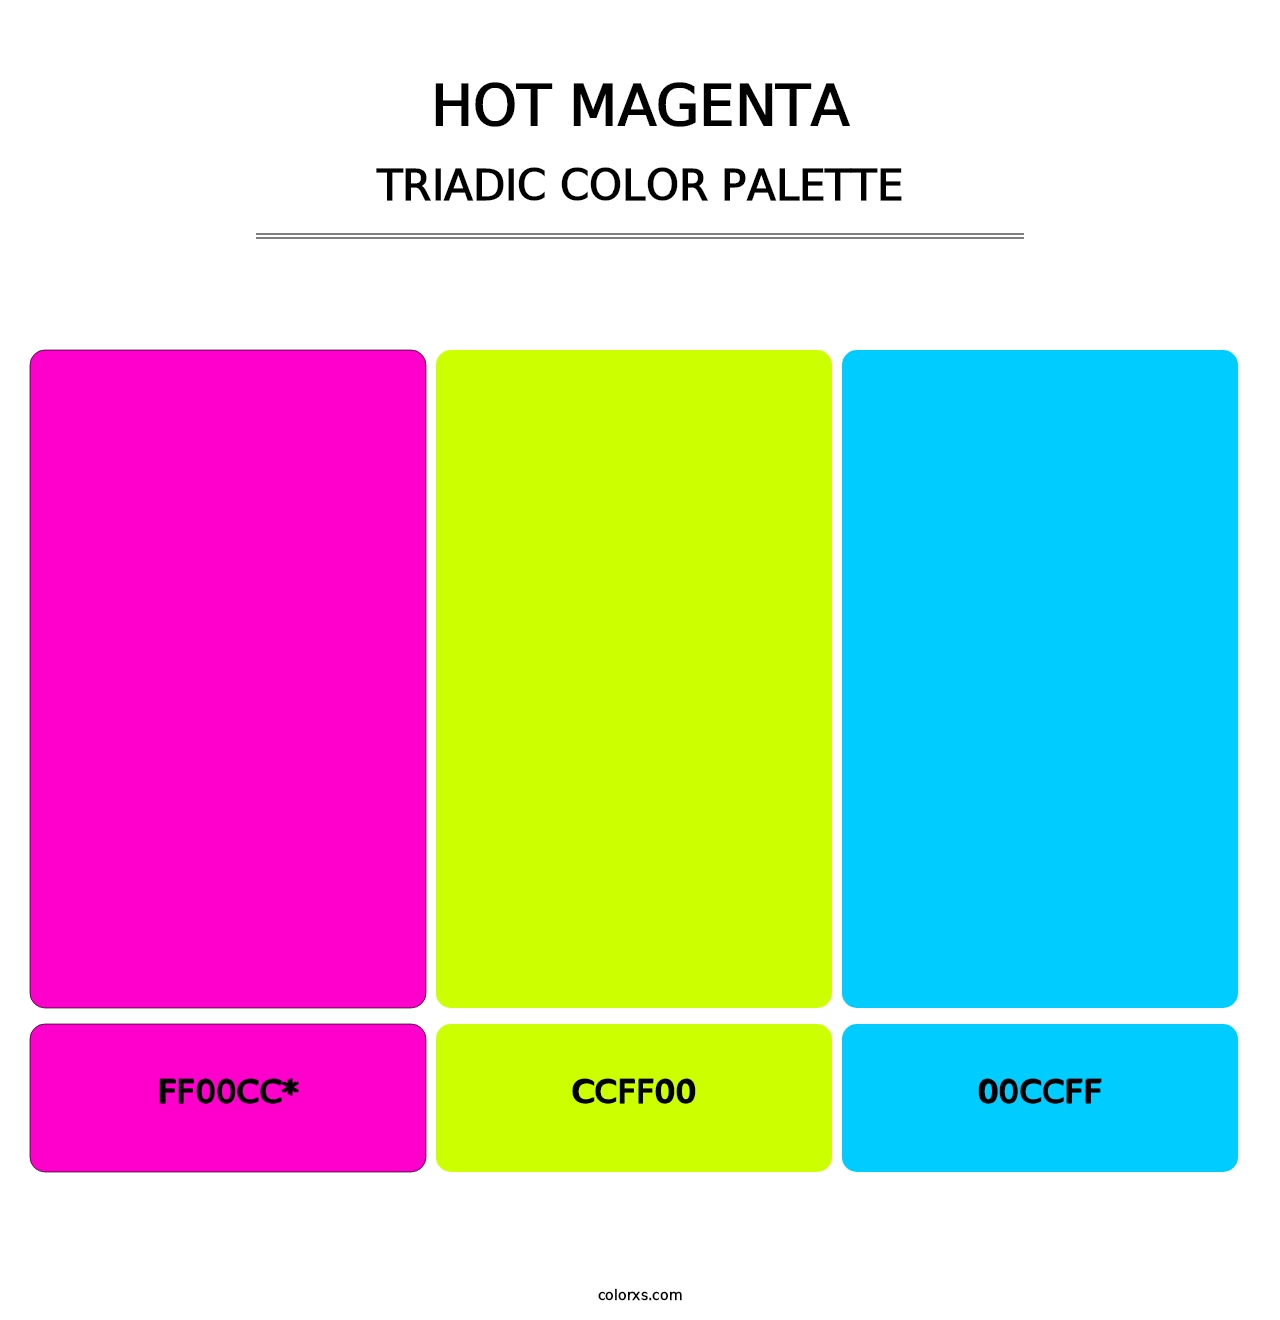 Hot Magenta - Triadic Color Palette